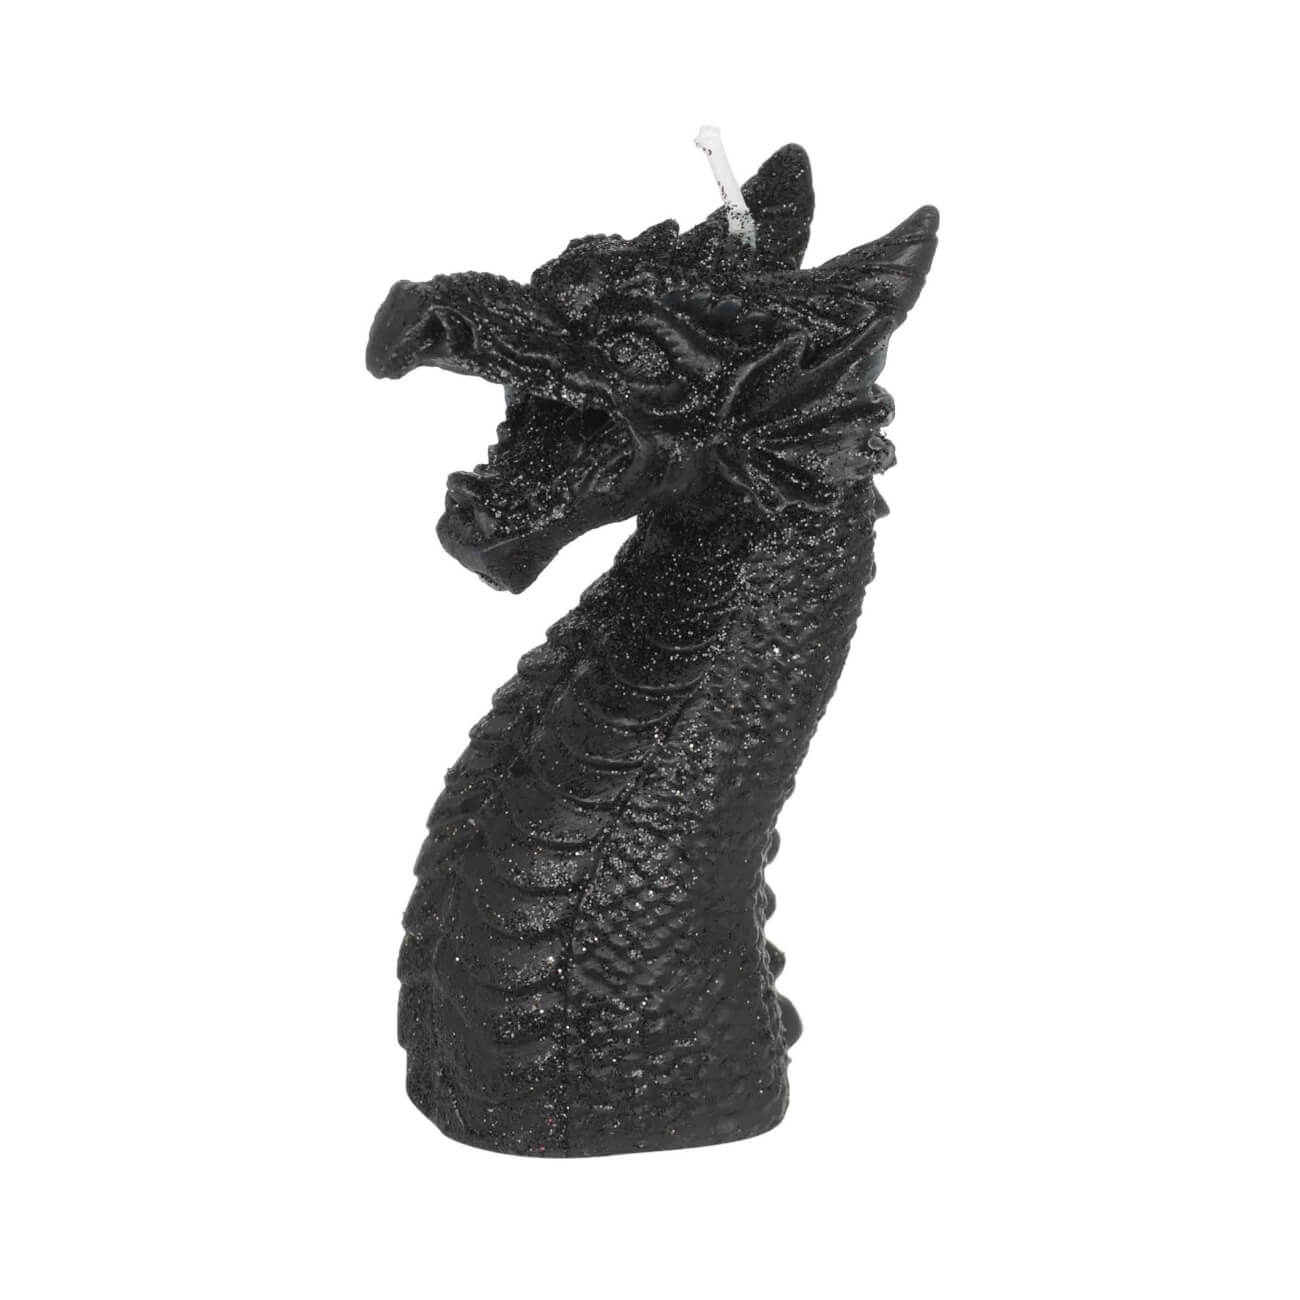 Свеча, 10 см, черная, Дракон, Dragon arrax свеча в гипсе амфион черная 9 см